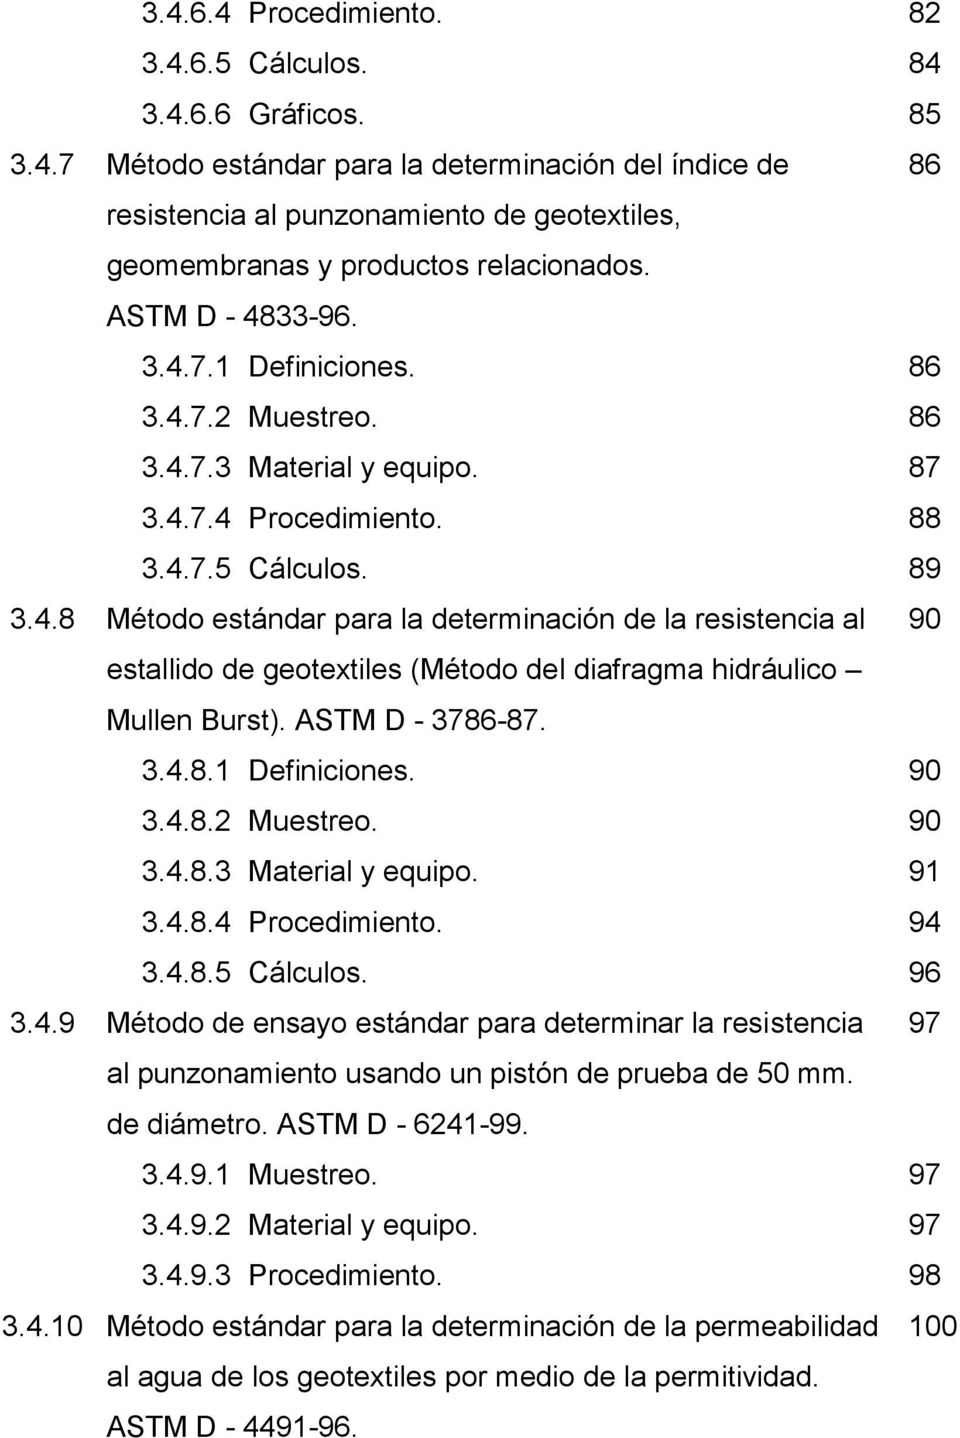 ASTM D - 3786-87. 3.4.8.1 Definiciones. 90 3.4.8.2 Muestreo. 90 3.4.8.3 Material y equipo. 91 3.4.8.4 Procedimiento. 94 3.4.8.5 Cálculos. 96 3.4.9 Método de ensayo estándar para determinar la resistencia 97 al punzonamiento usando un pistón de prueba de 50 mm.